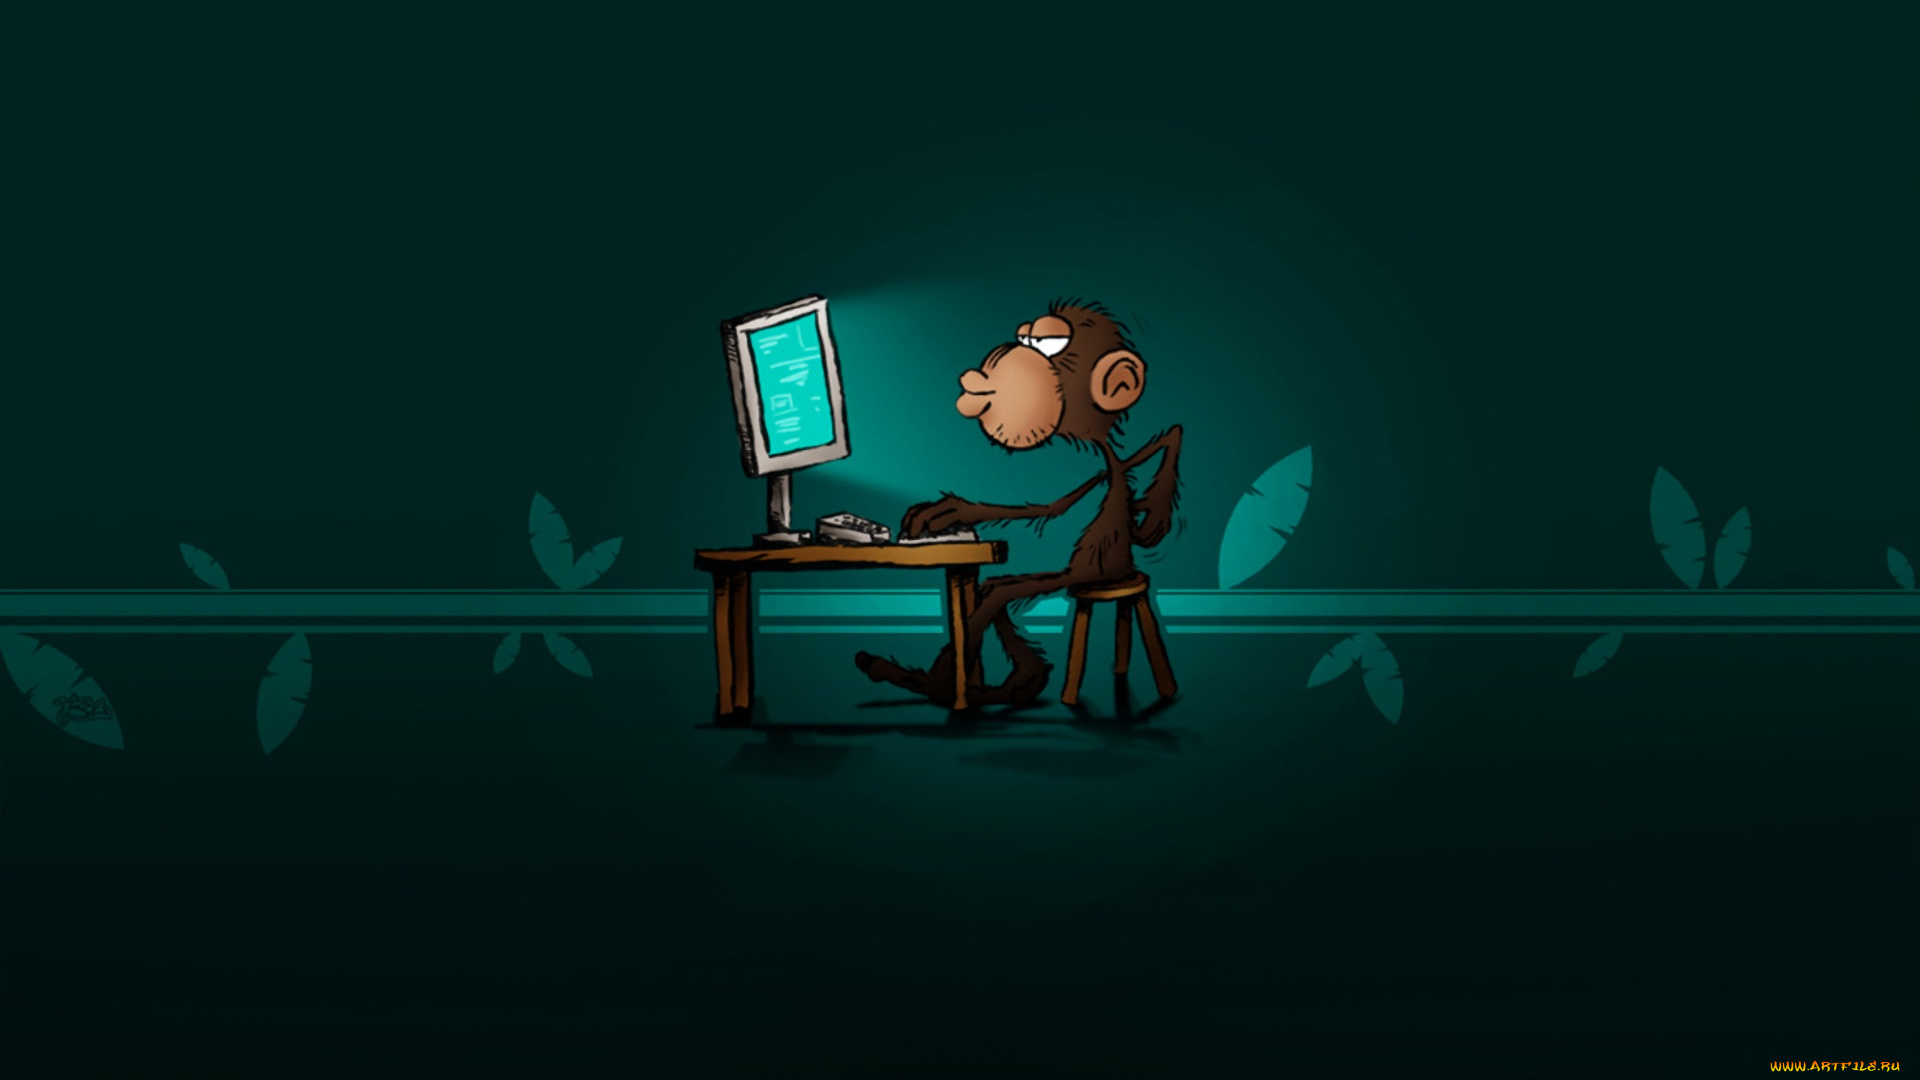 рисованное, животные, , обезьяны, обезьяна, компьютер